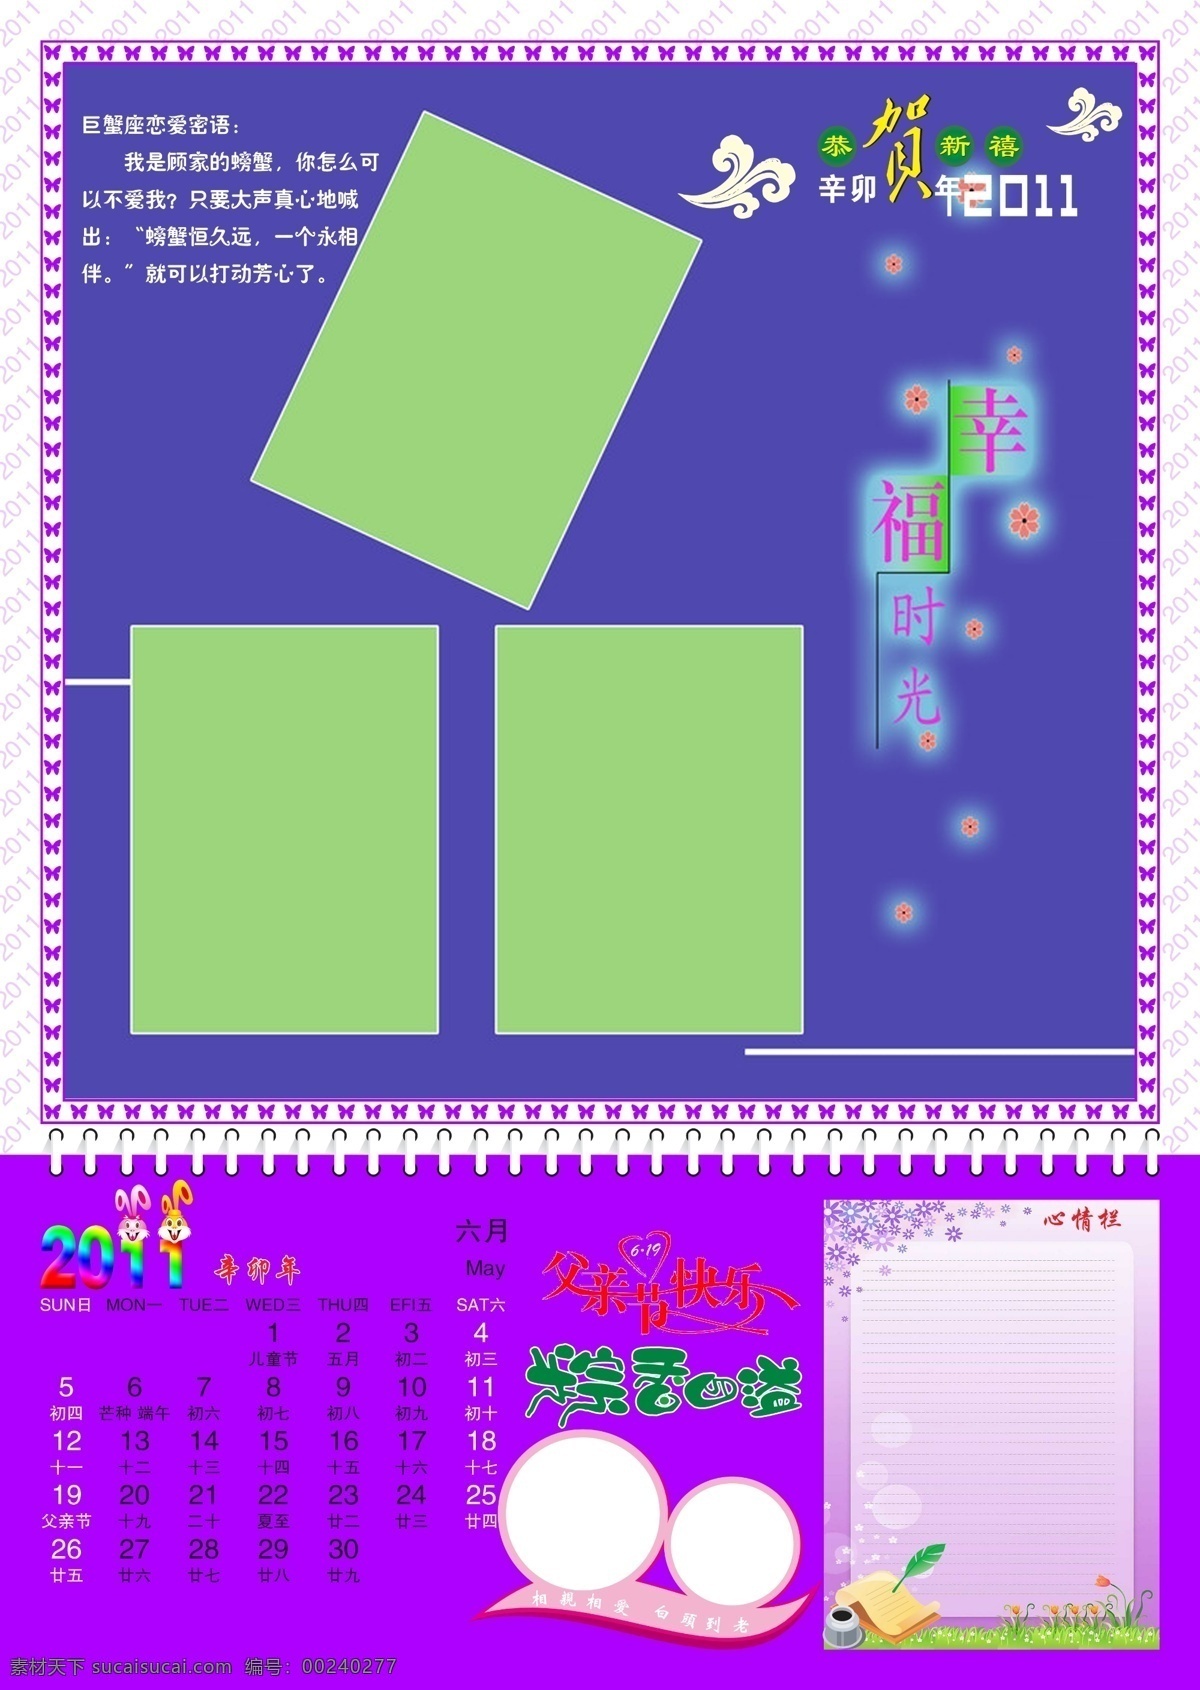 六月 模版下载 六月素材下载 六月模板下载 6月份 2011 2011年 父亲节快乐 挂历 挂历模版 春节 节日素材 源文件 紫色